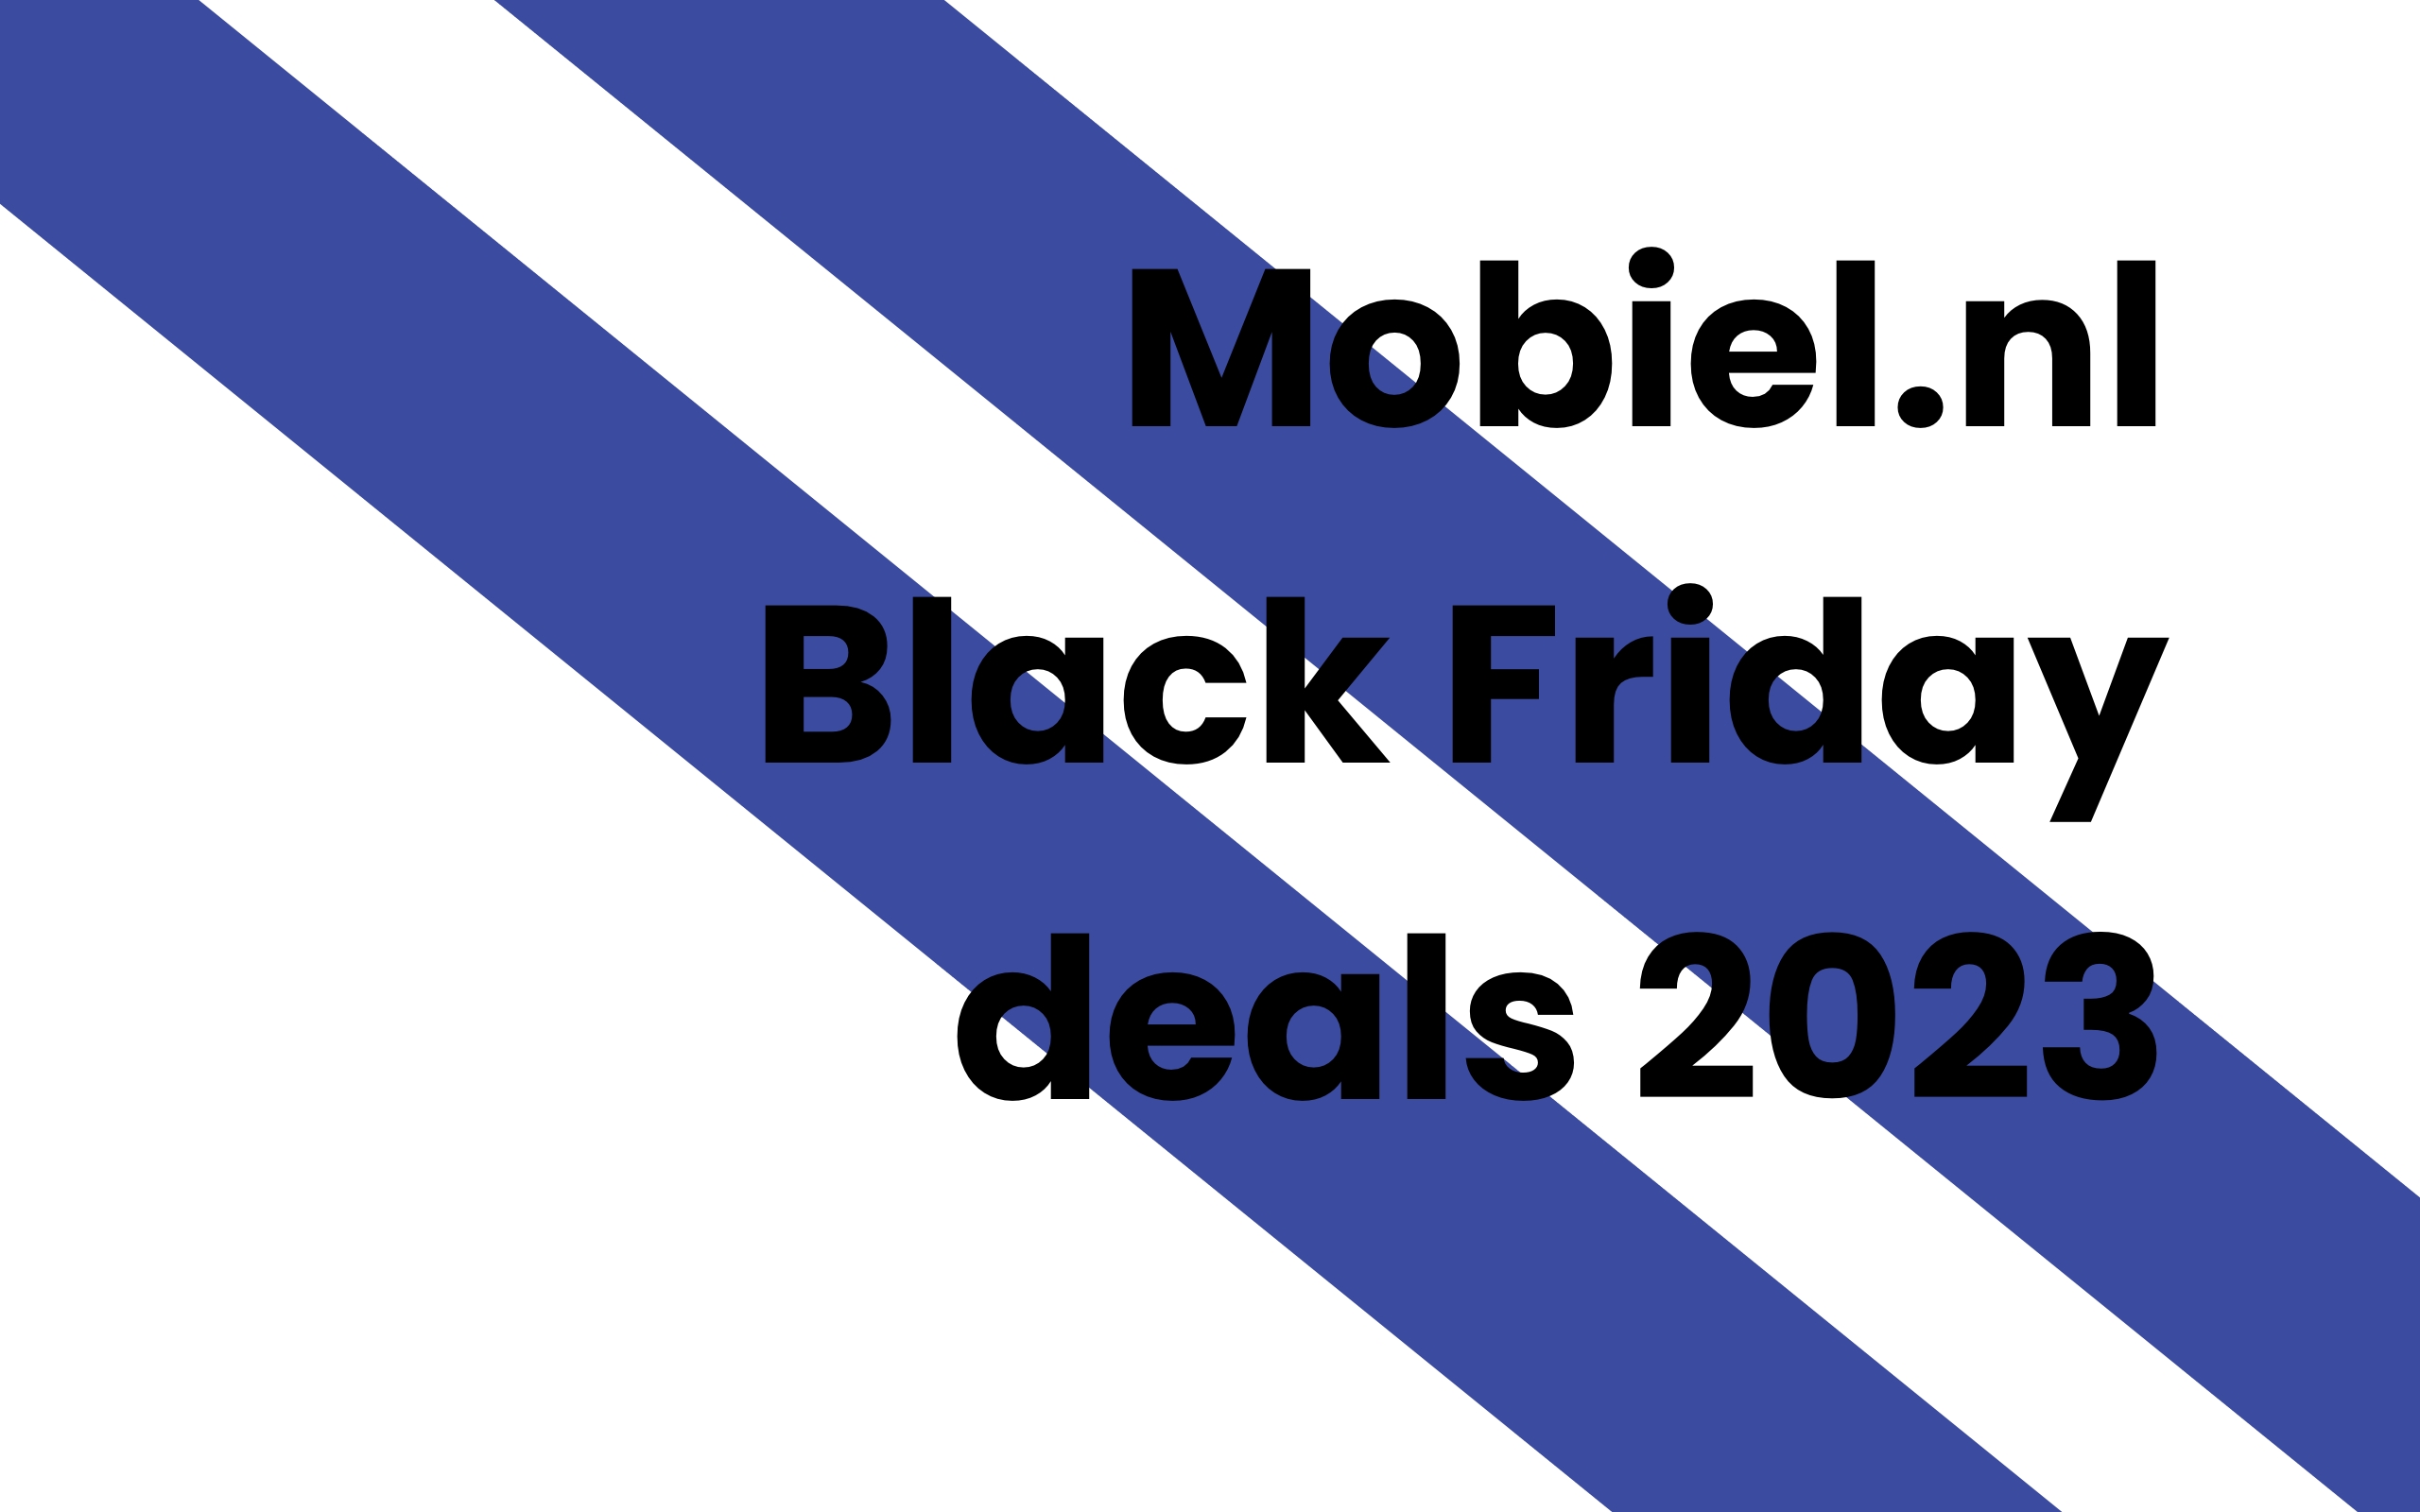 Mobiel.nl Black Friday deals